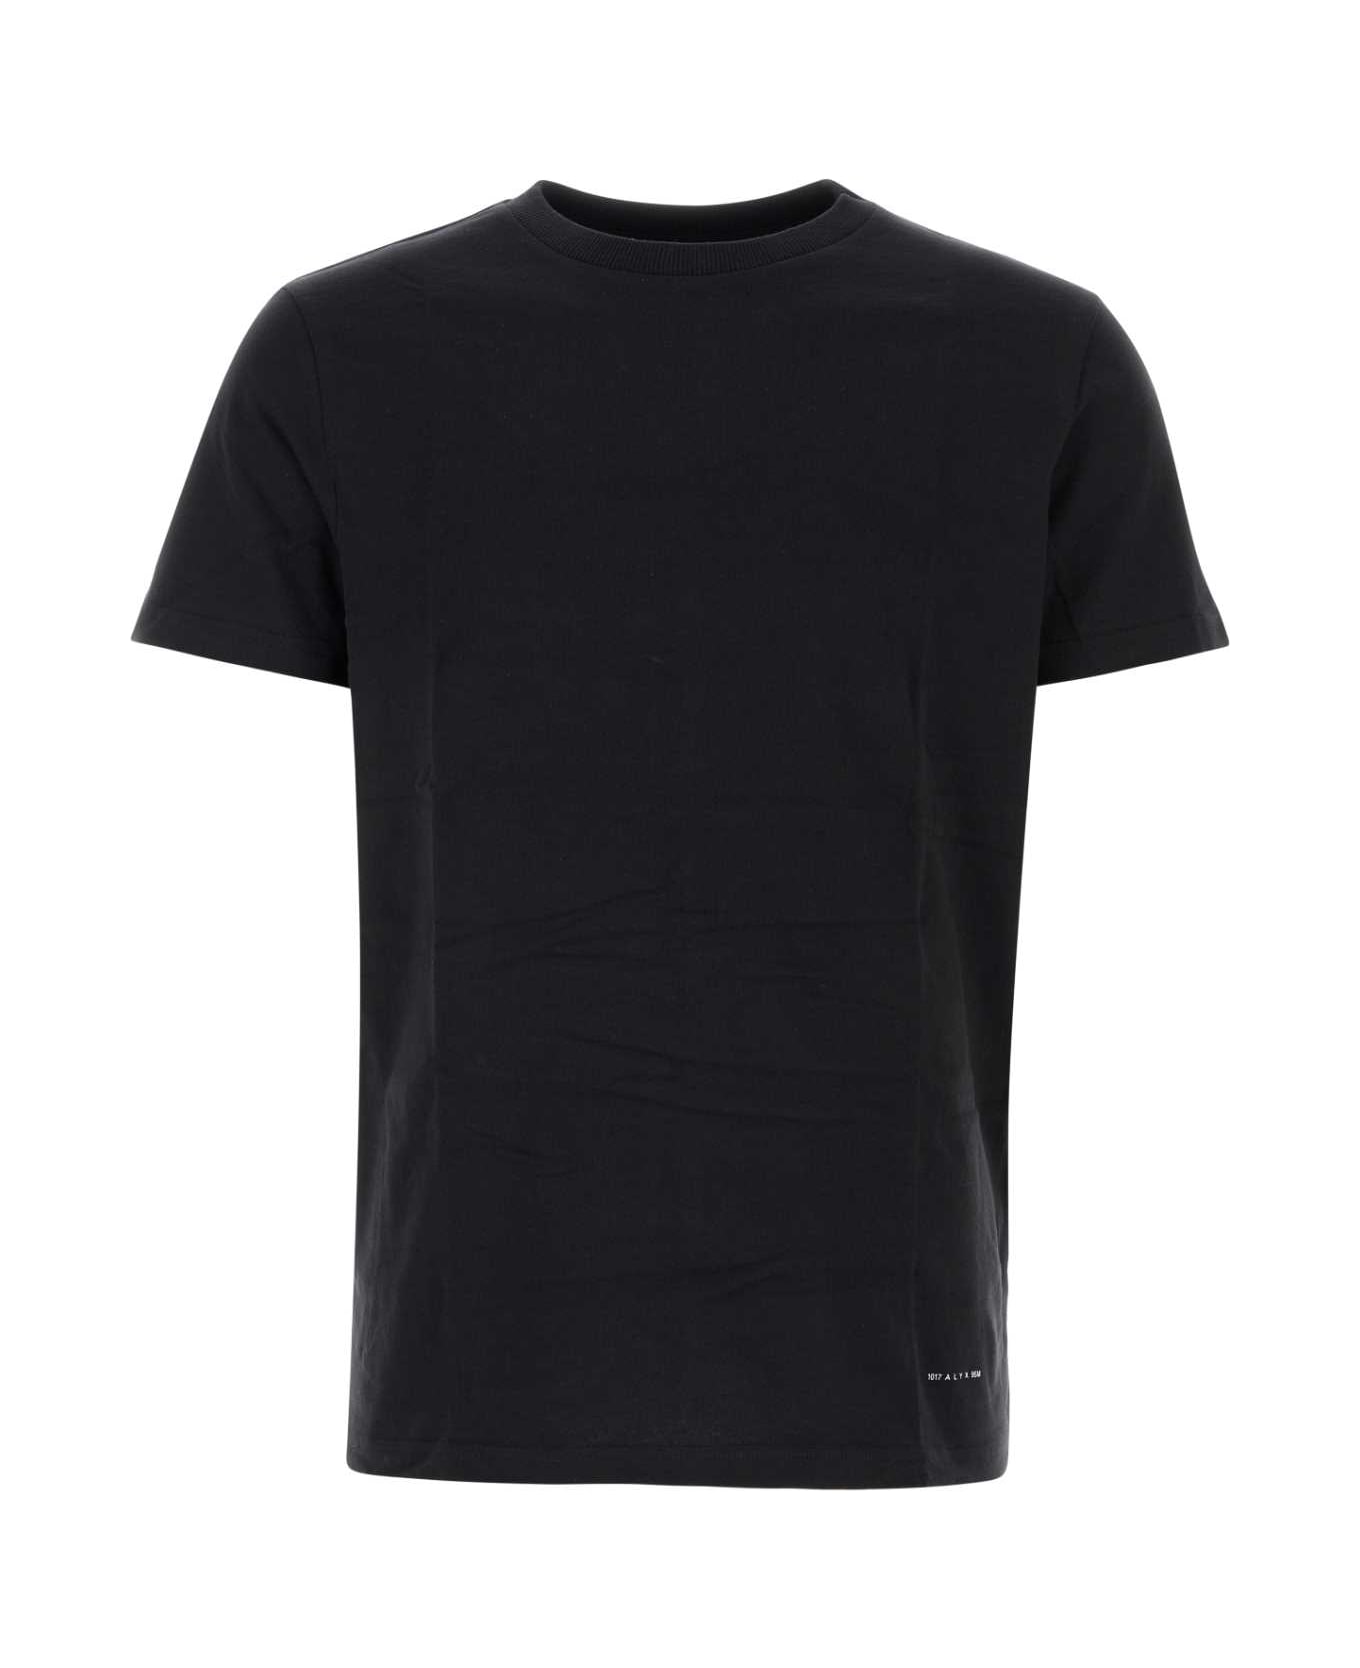 1017 ALYX 9SM Black Cotton T-shirt Set - BLK0001